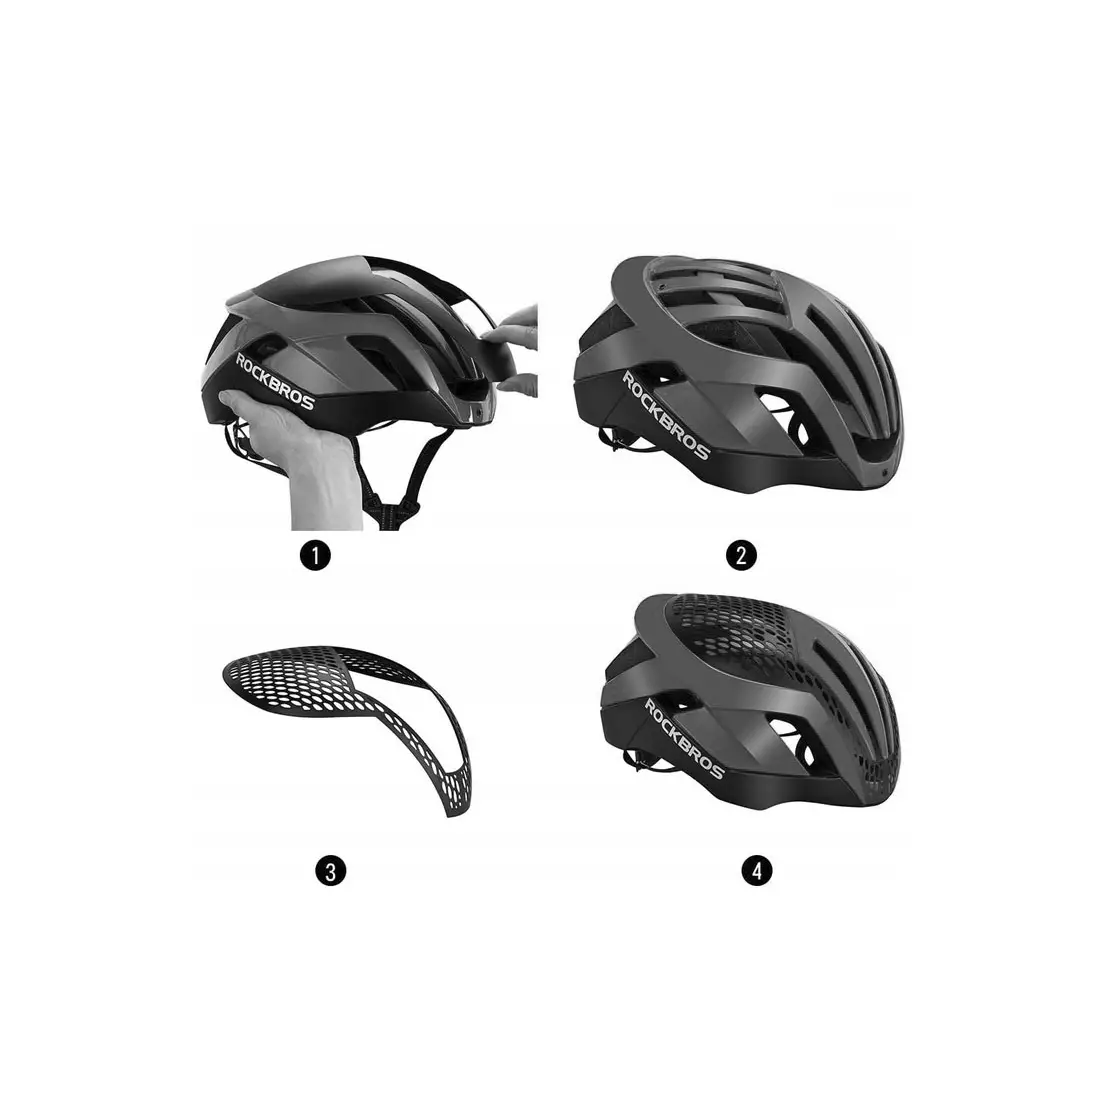 Rockbros Rennrad-Helm + Auswechselbare Abdeckung, schwarz-grau TT-30-TI